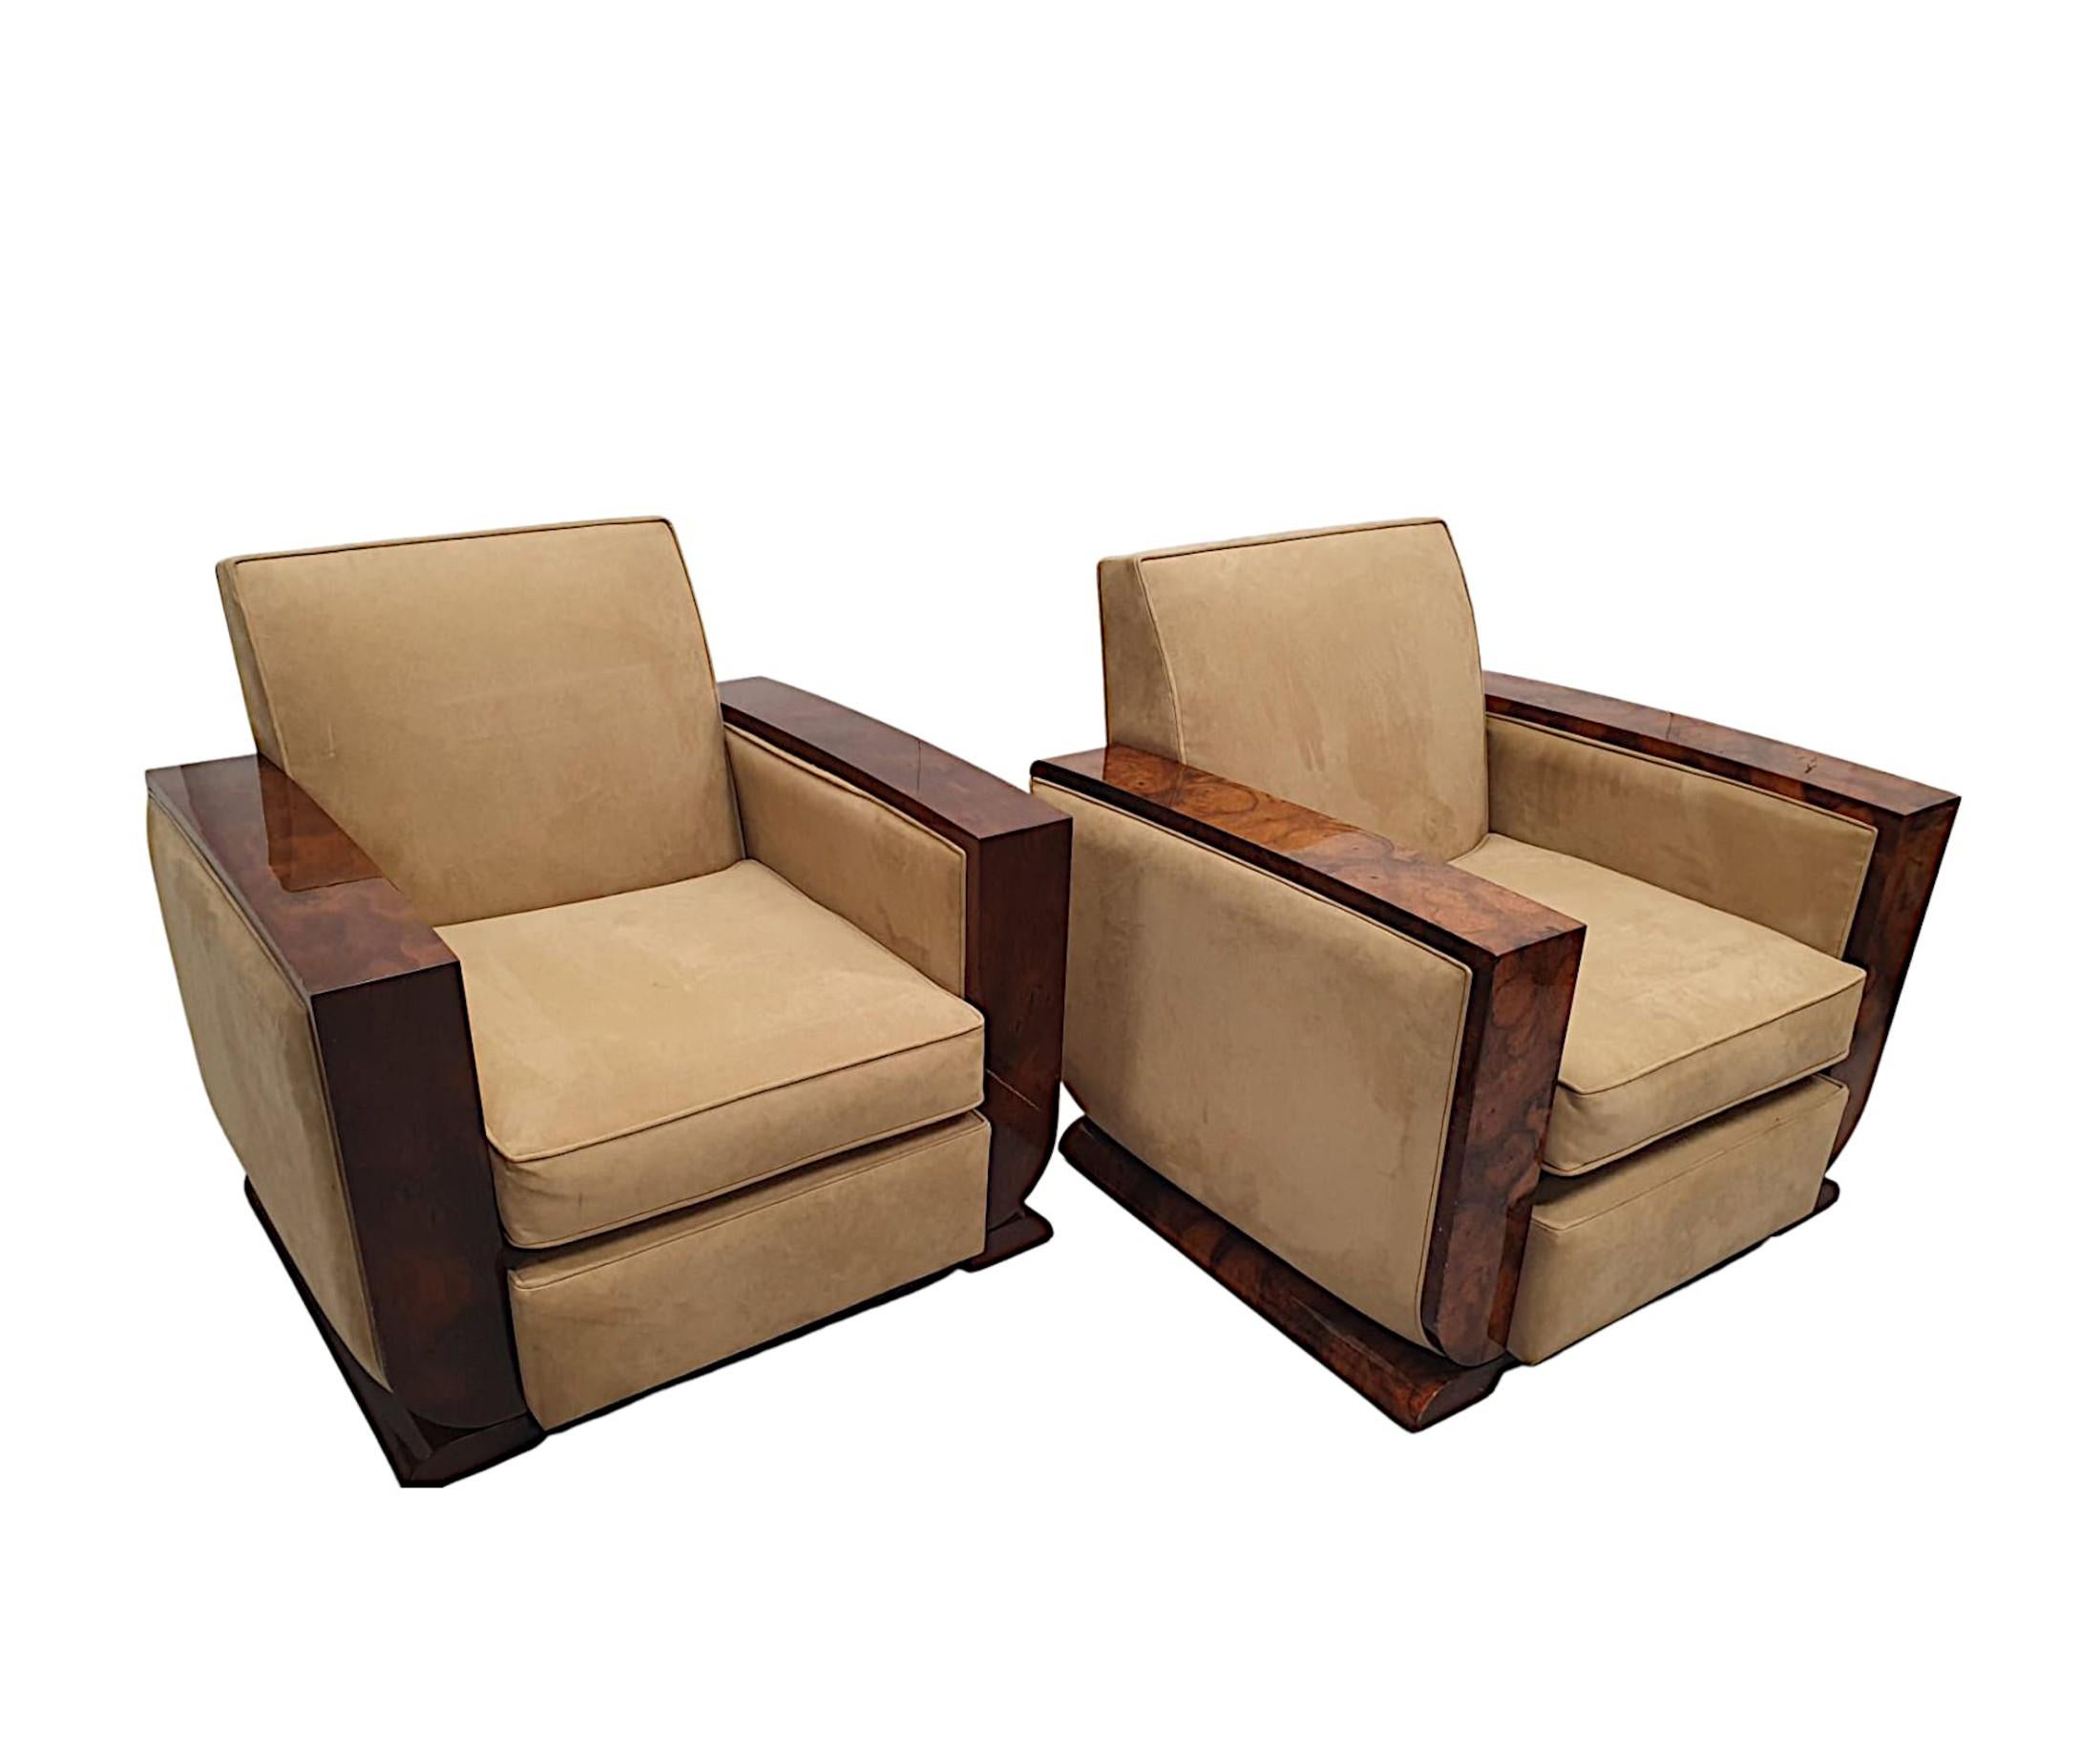 Ein fabelhaftes Paar Sessel des 20. Jahrhunderts im Stil des Art déco. Die gepolsterte Rückenlehne und der Sitz sind mit cremefarbenem Wildleder gepolstert und mit Paspeln versehen. Die Armlehnen sind mit reichlich patiniertem Holz aus